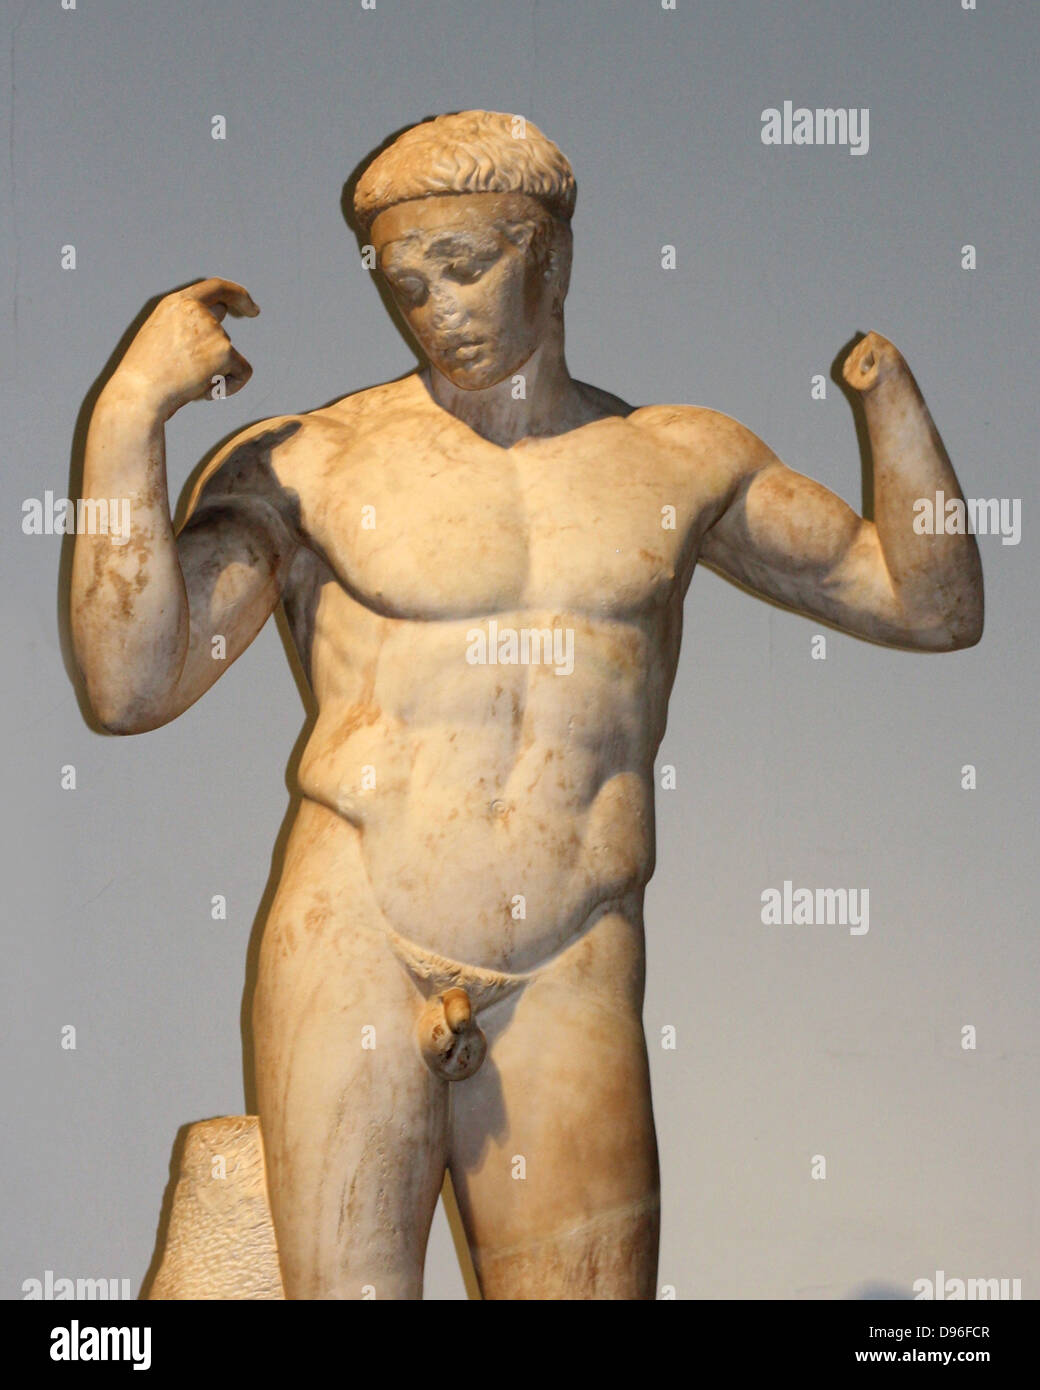 "I Giardini di Kew Hermes'. Statua di Hermes, il dio patrono della palestra. Roman, I secolo d.c. copia di un originale greco da 330-300 A.C. Foto Stock